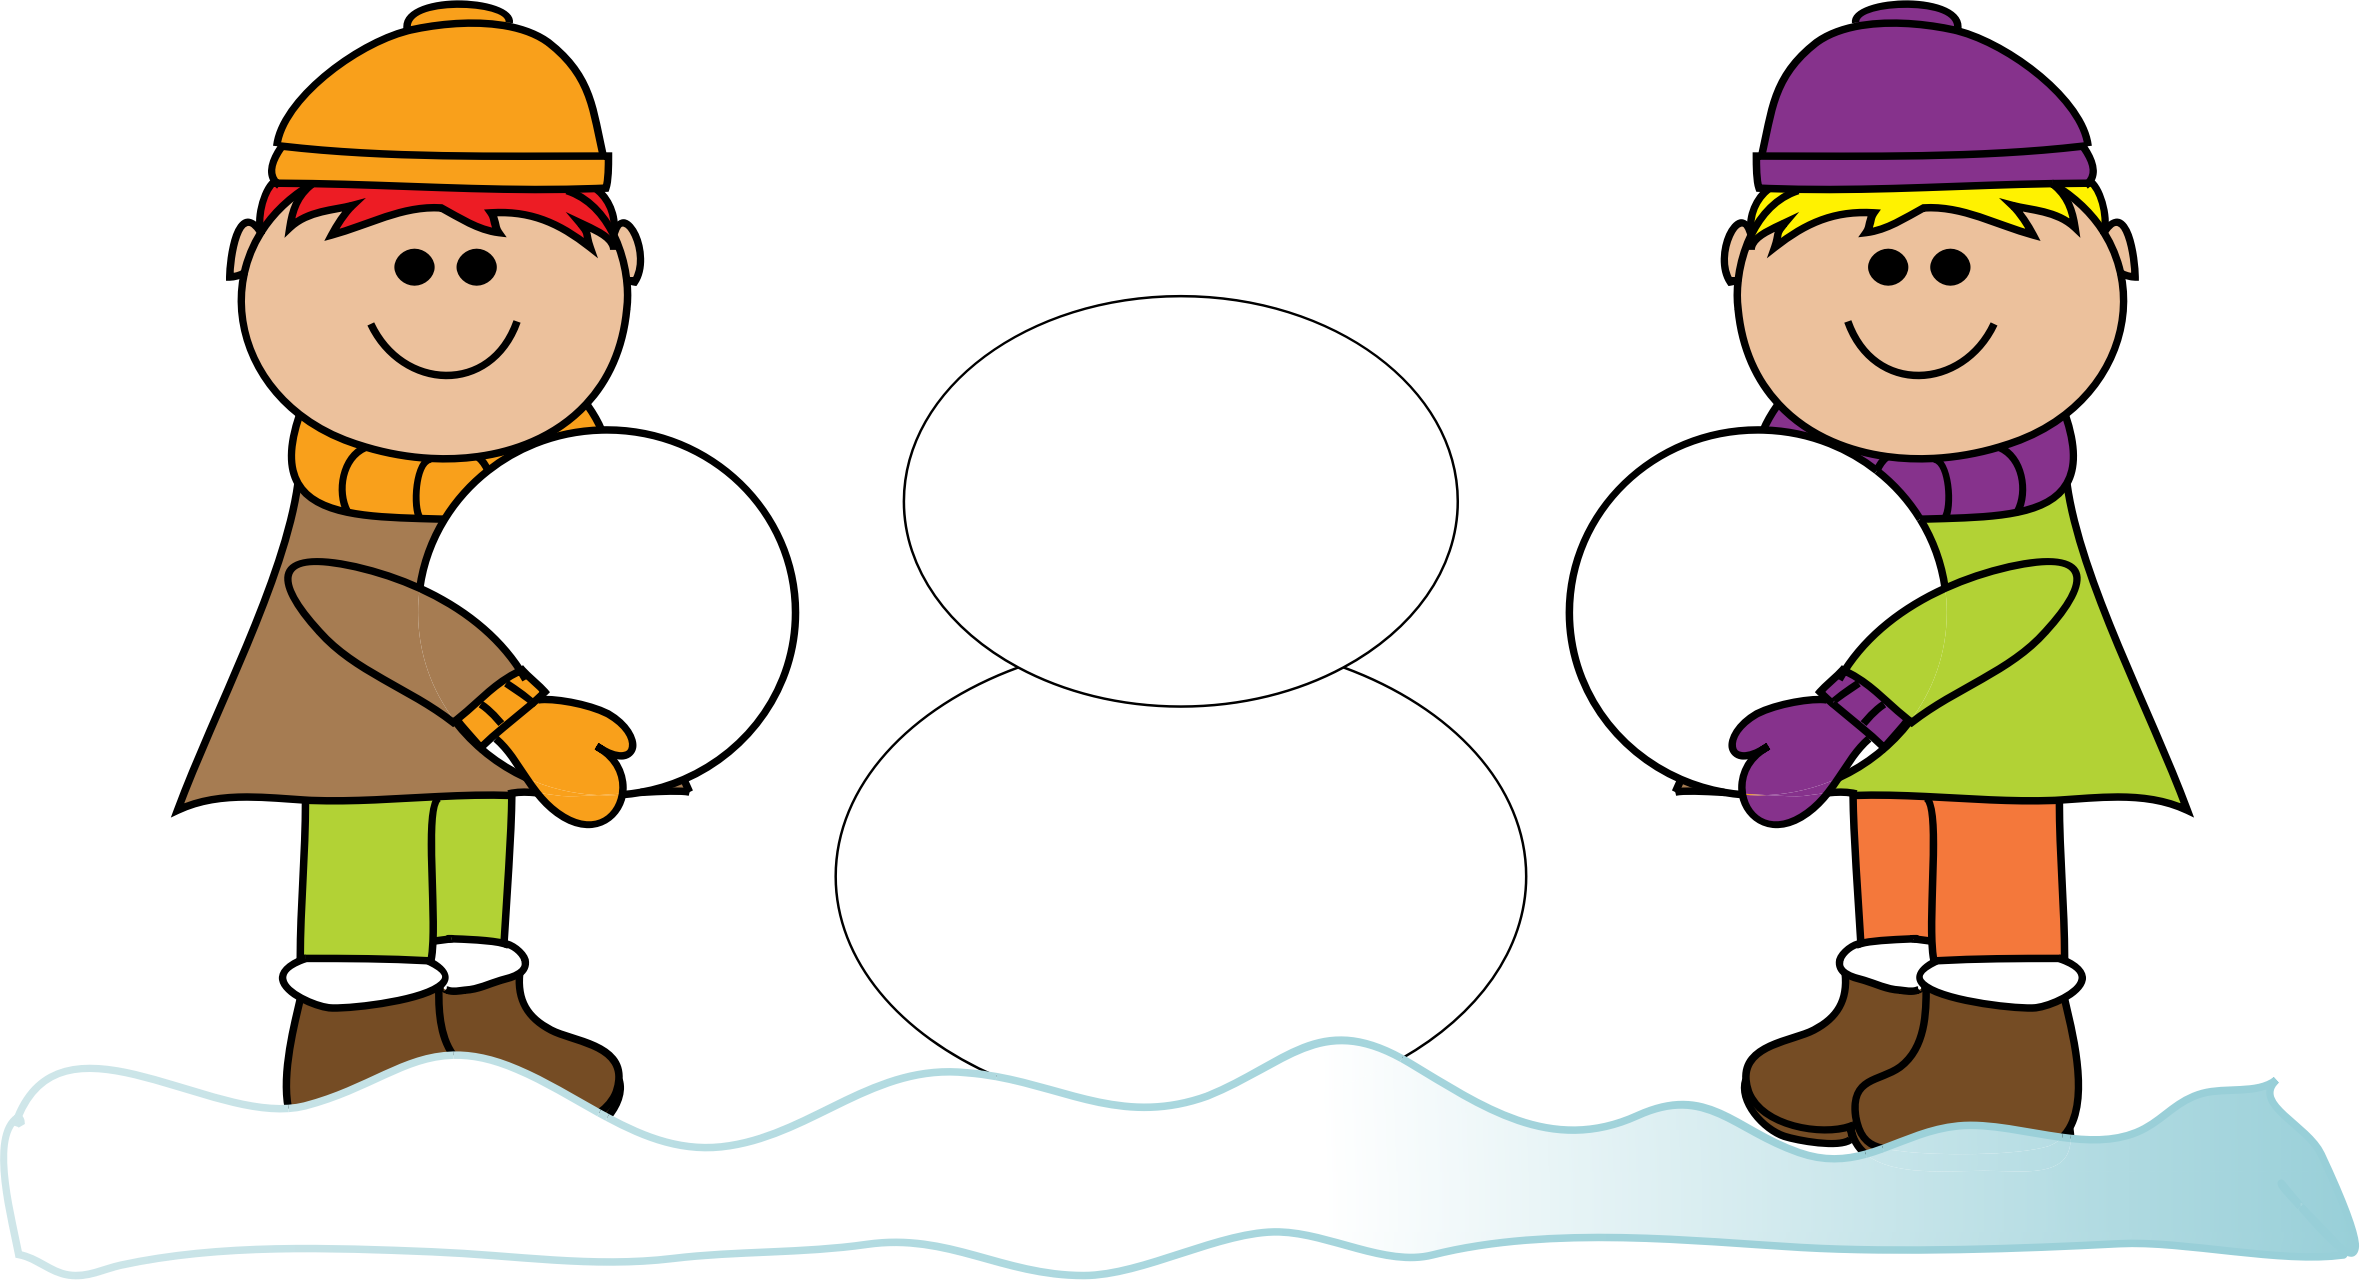 build-a-snowman-clipart-free-hand-drawn-snowman-cartoon-snowman-winter-snowman-evil